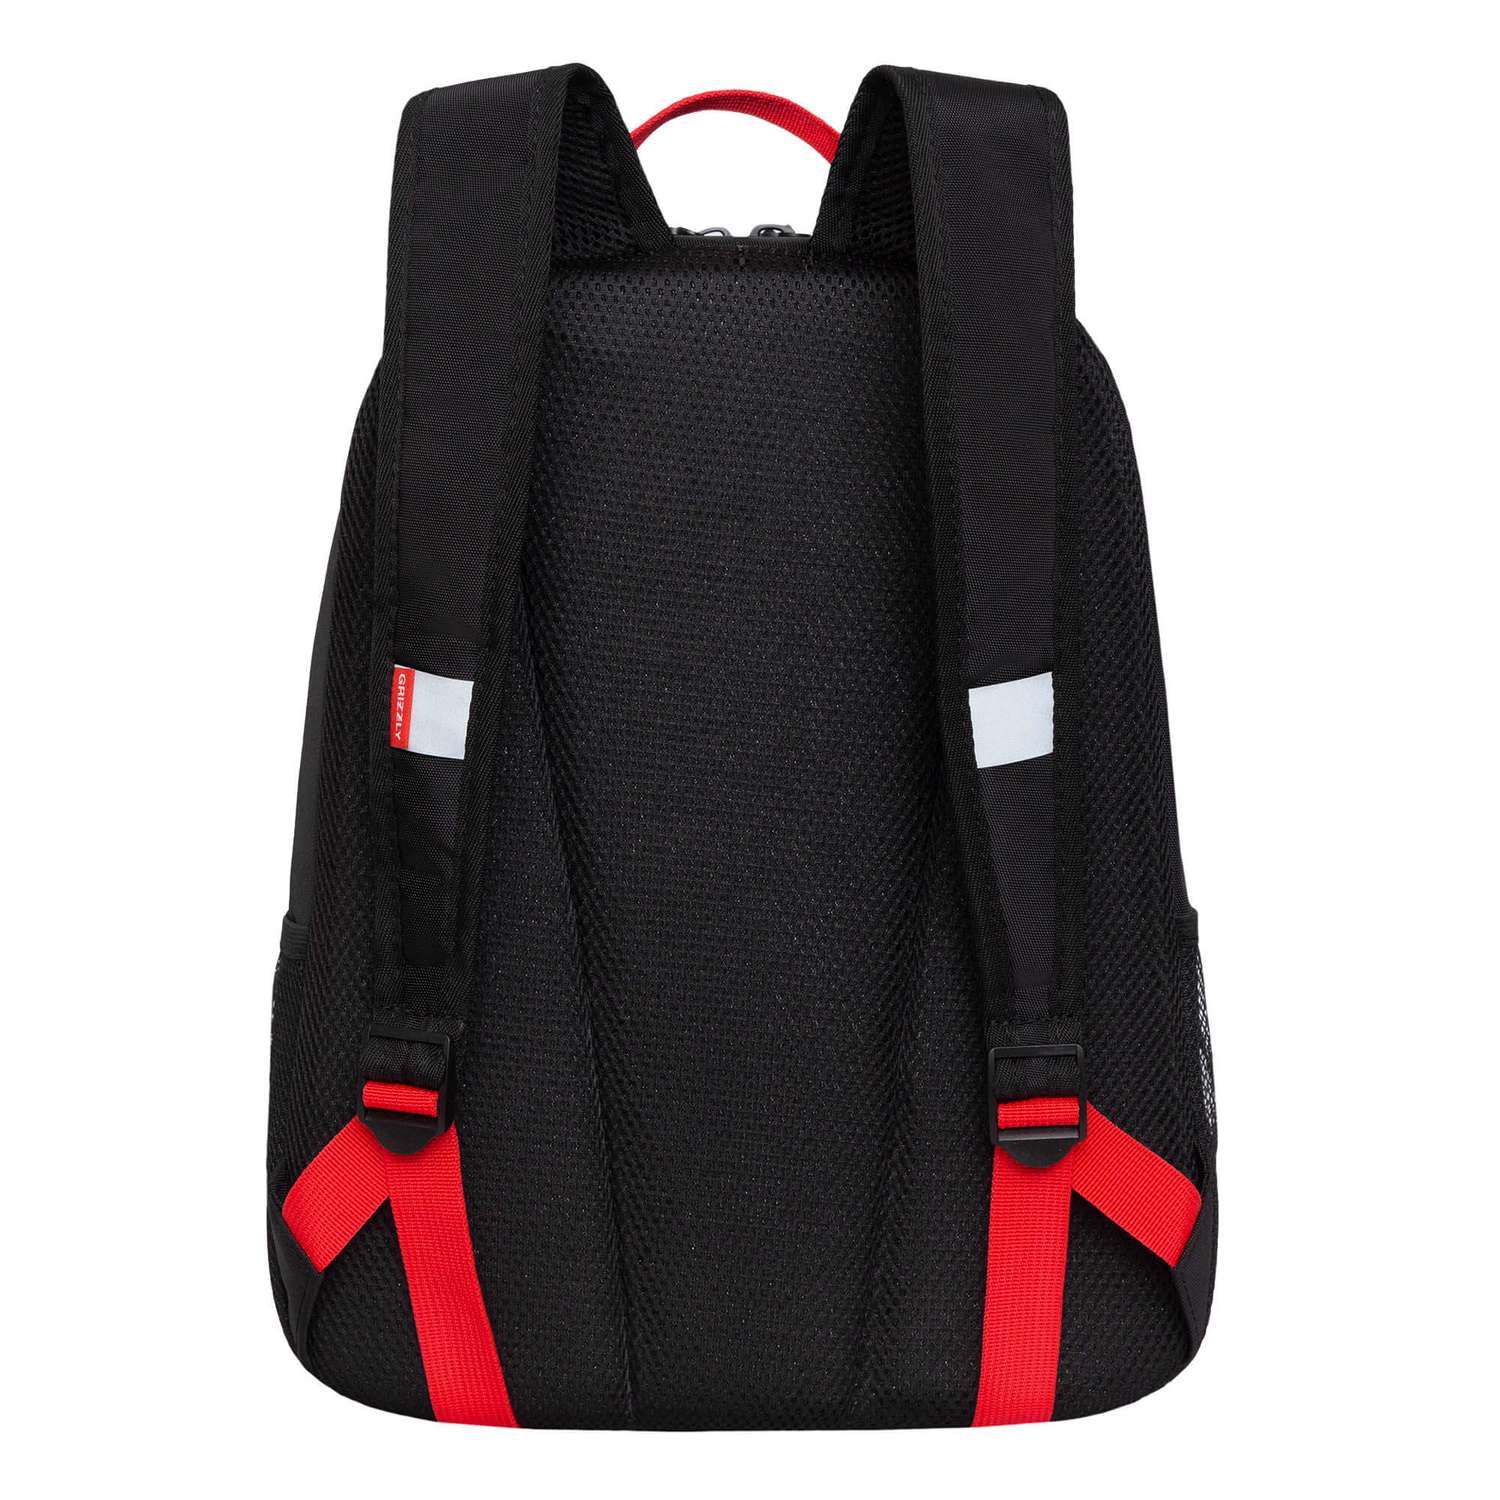 Рюкзак школьный Grizzly Черный-Красный RB-351-7/1 - фото 3